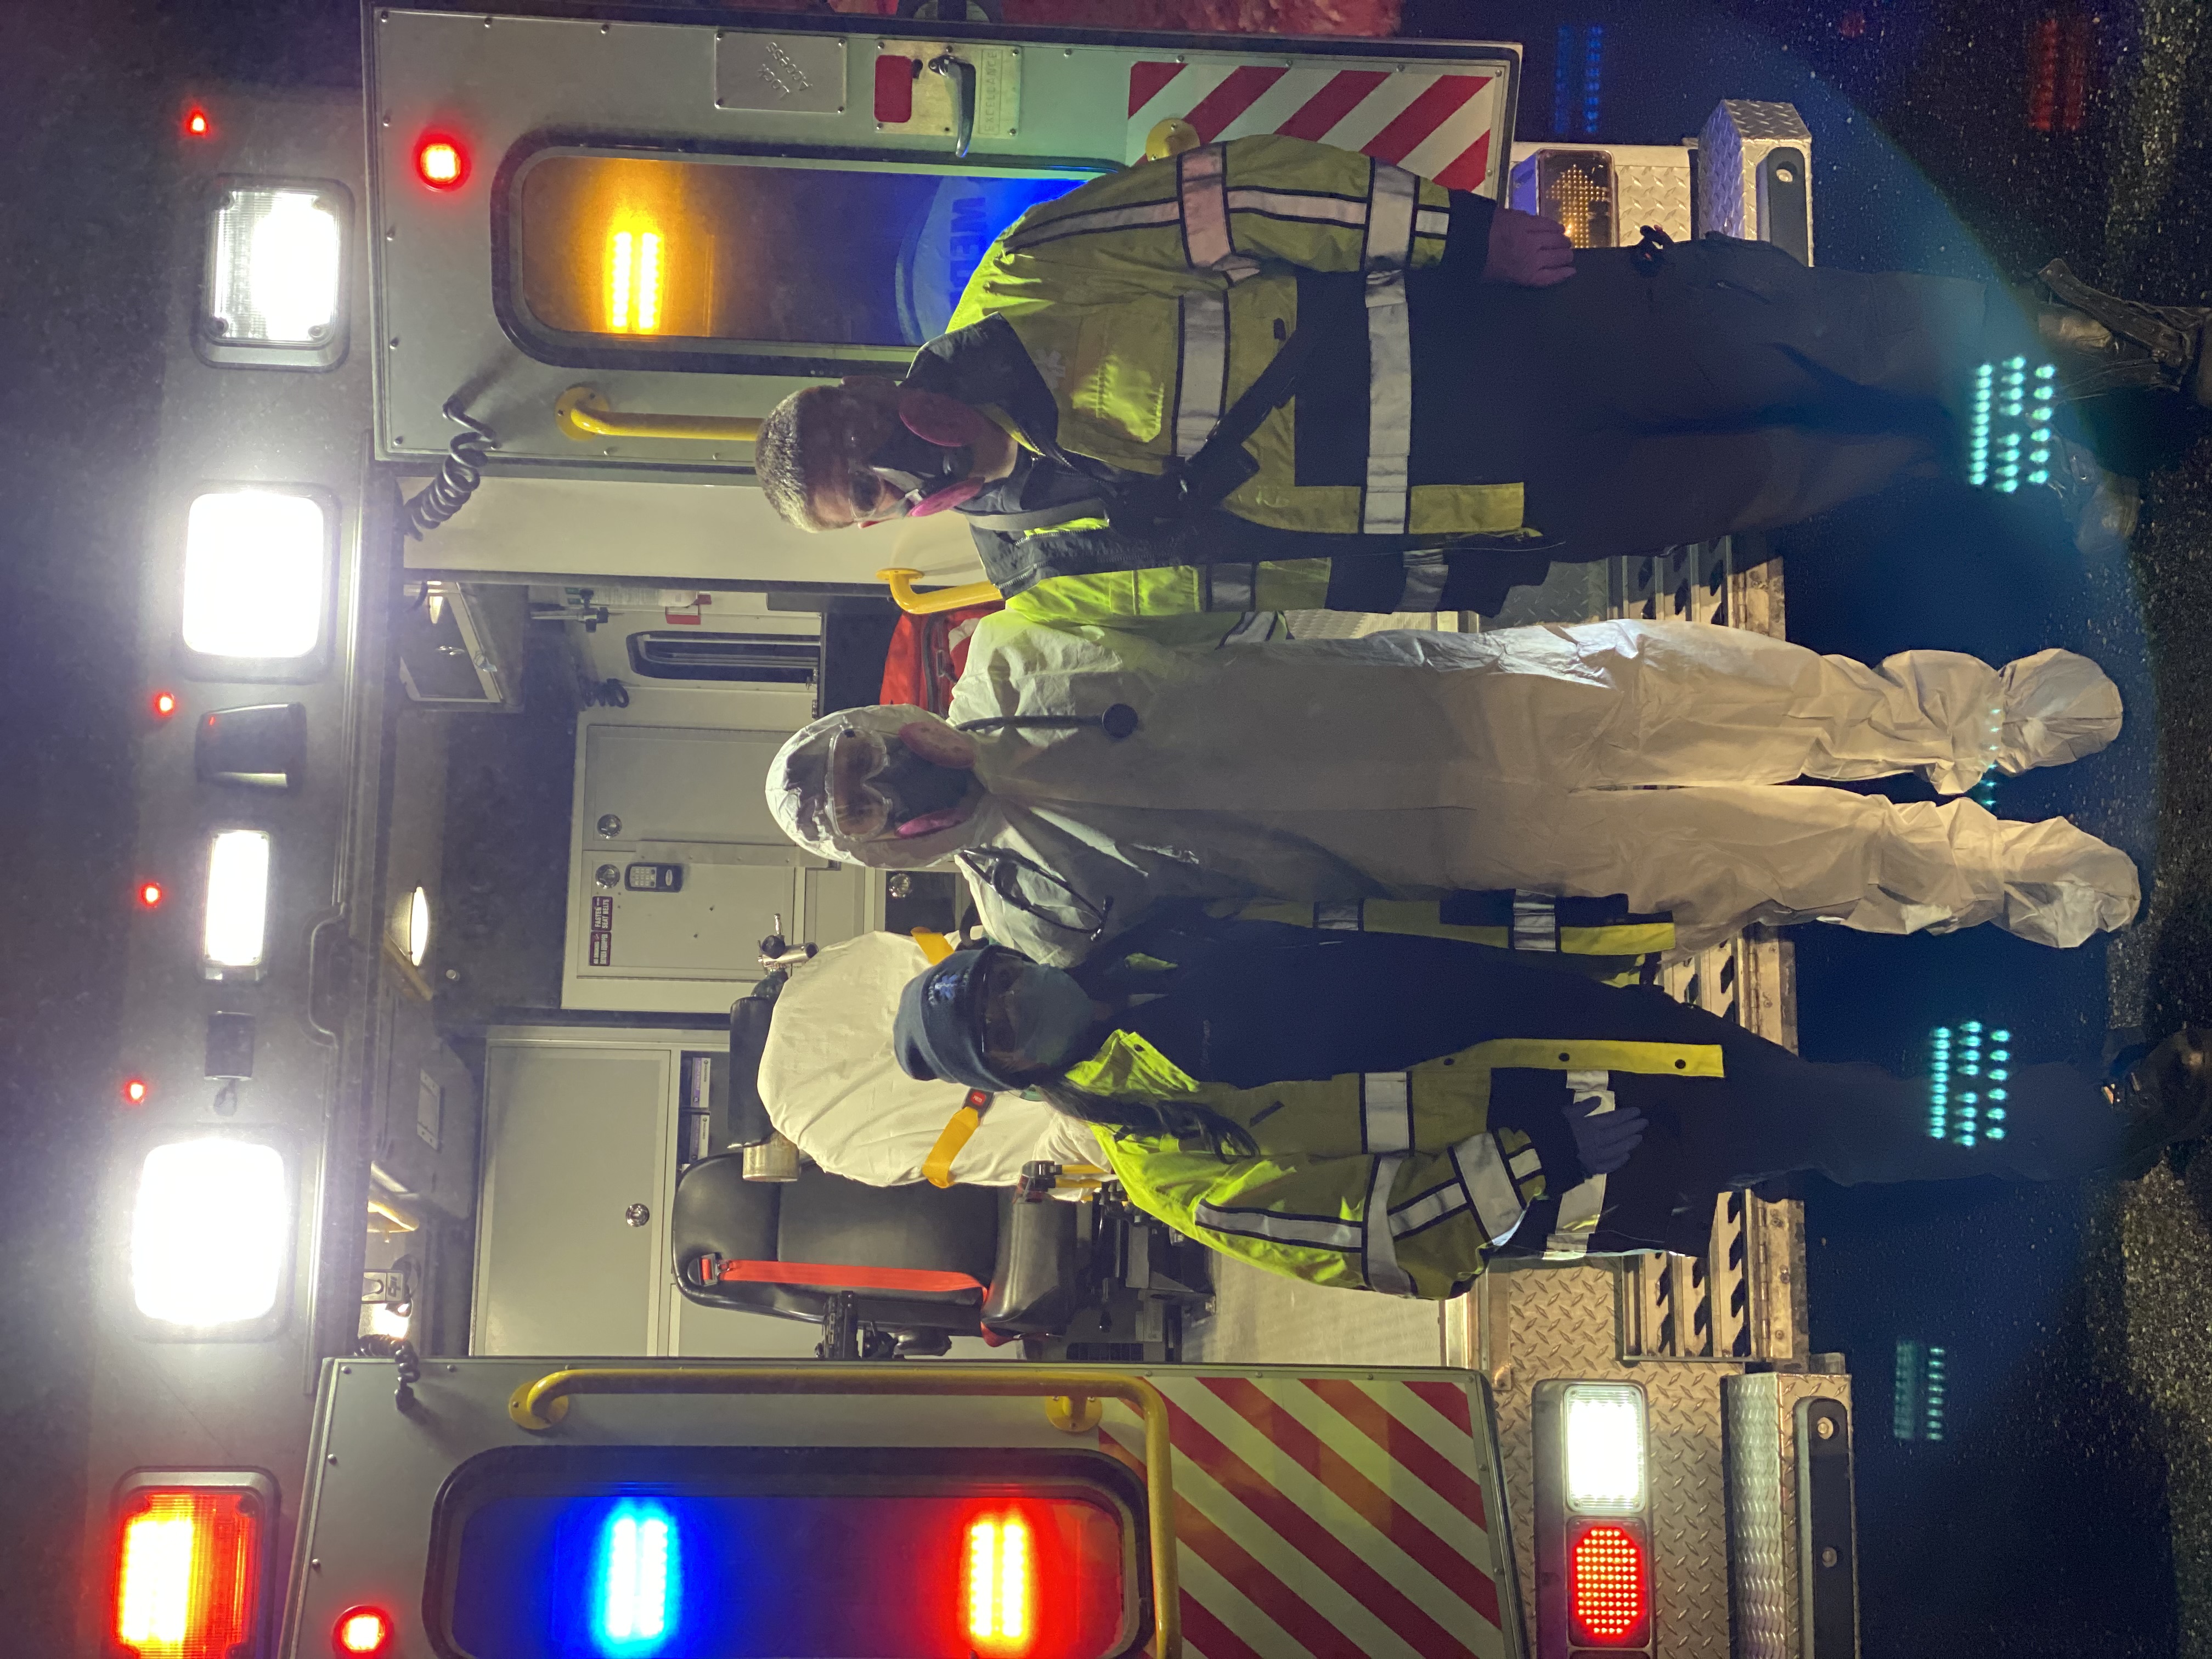 Medford Volunteer Ambulance Team